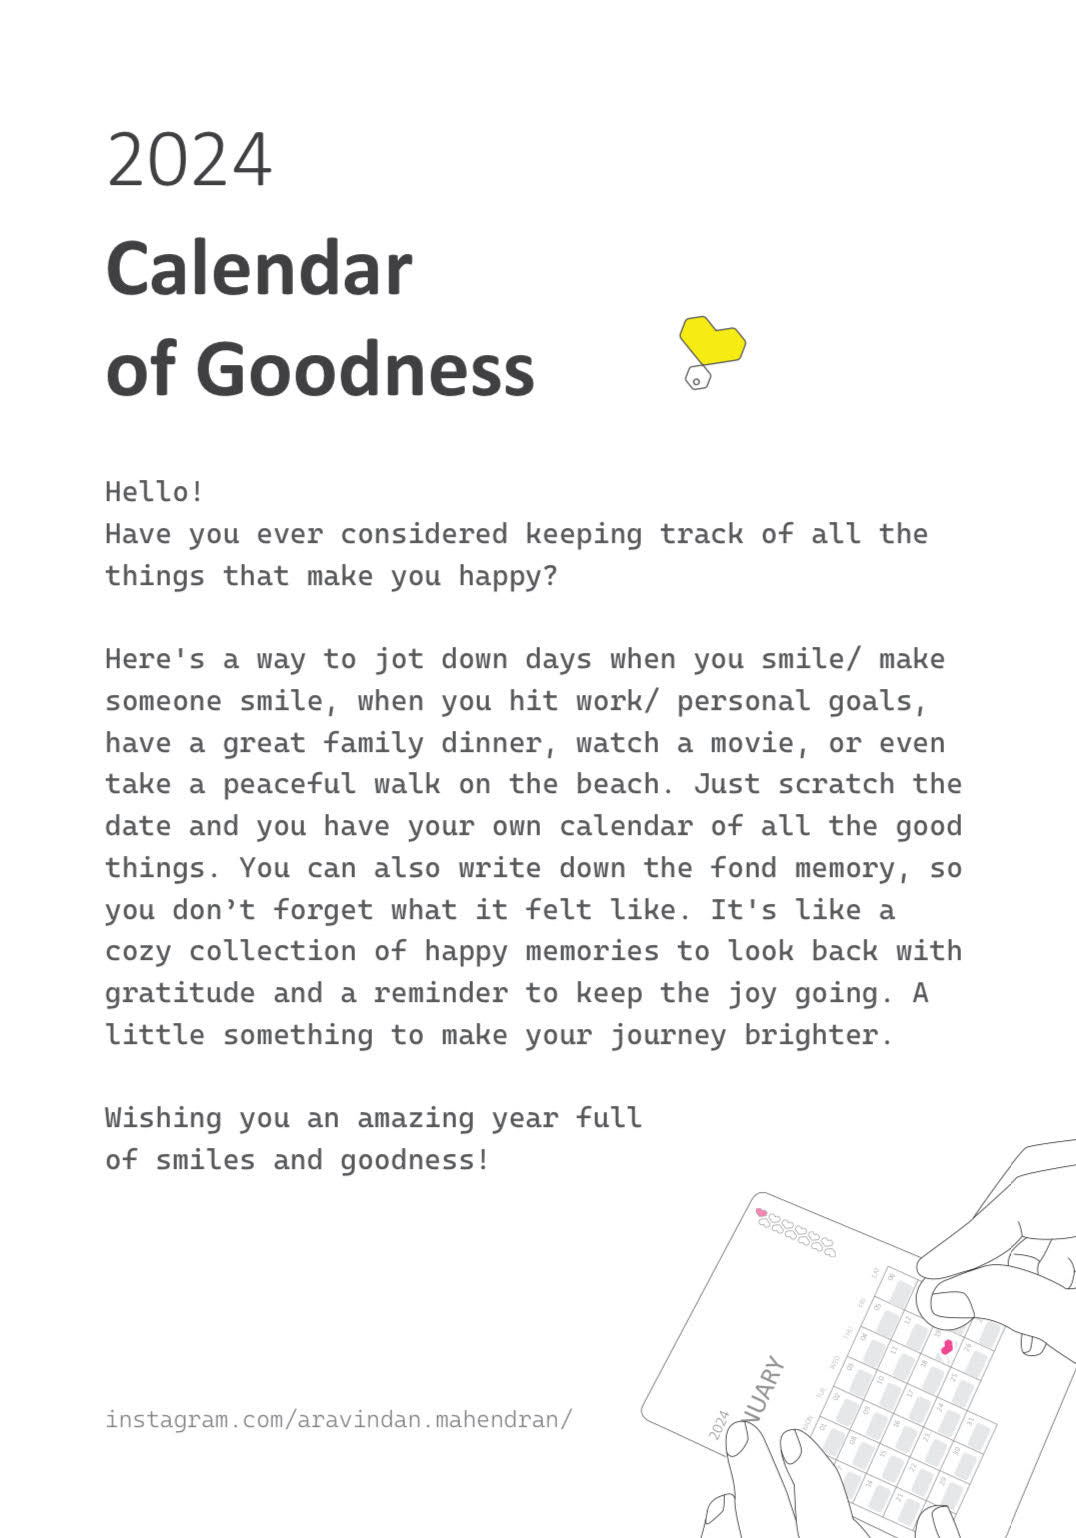 2024 Calendar of Goodness by Aravindan Mahendran